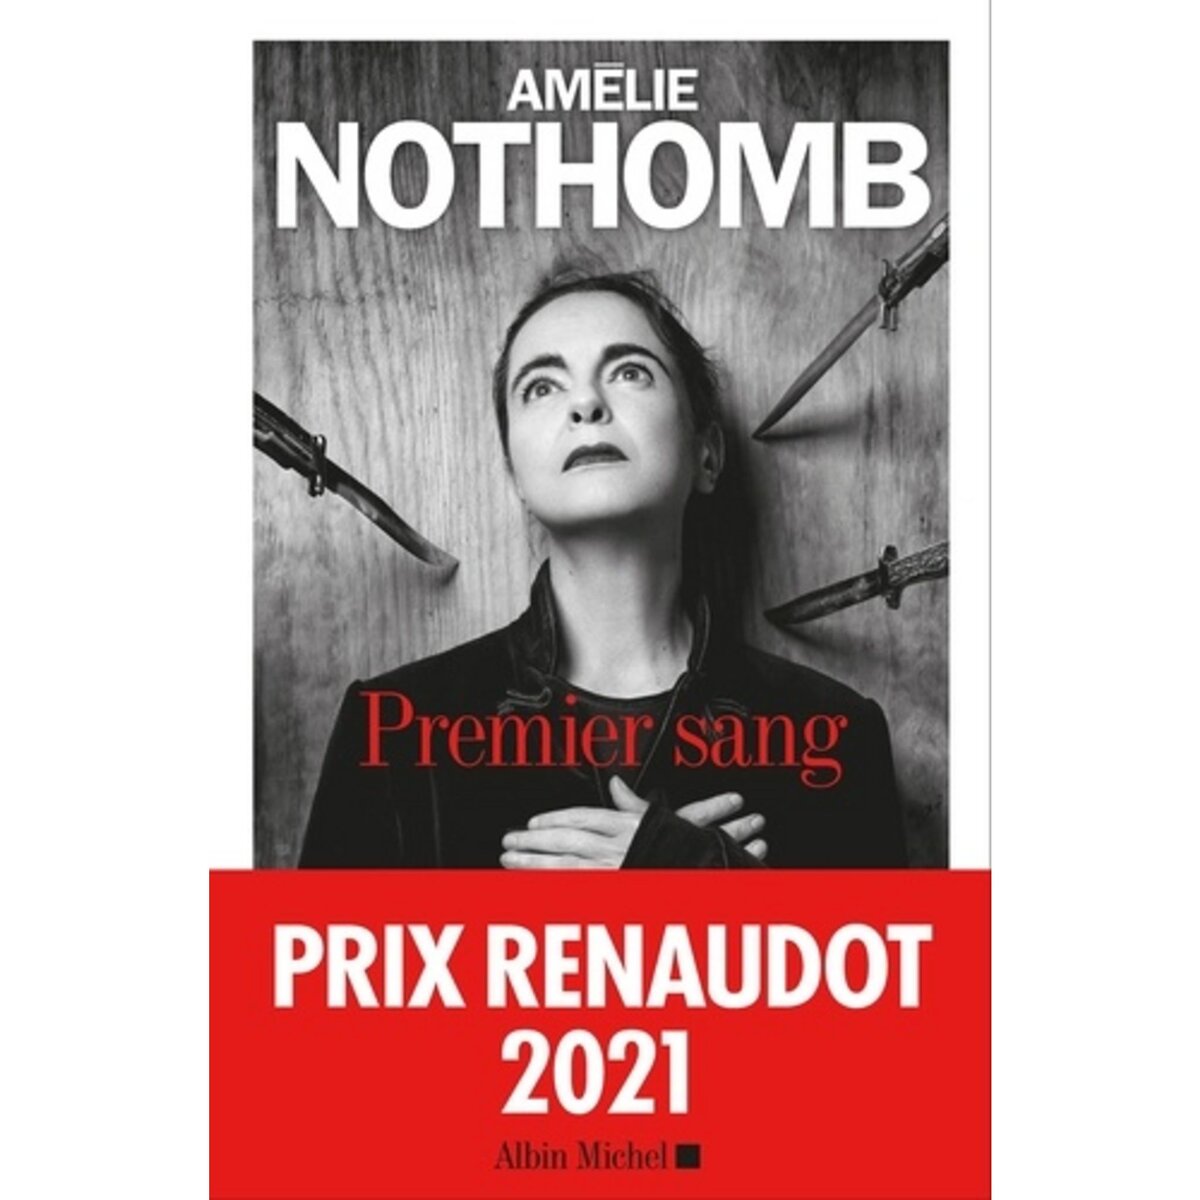  PREMIER SANG, Nothomb Amélie